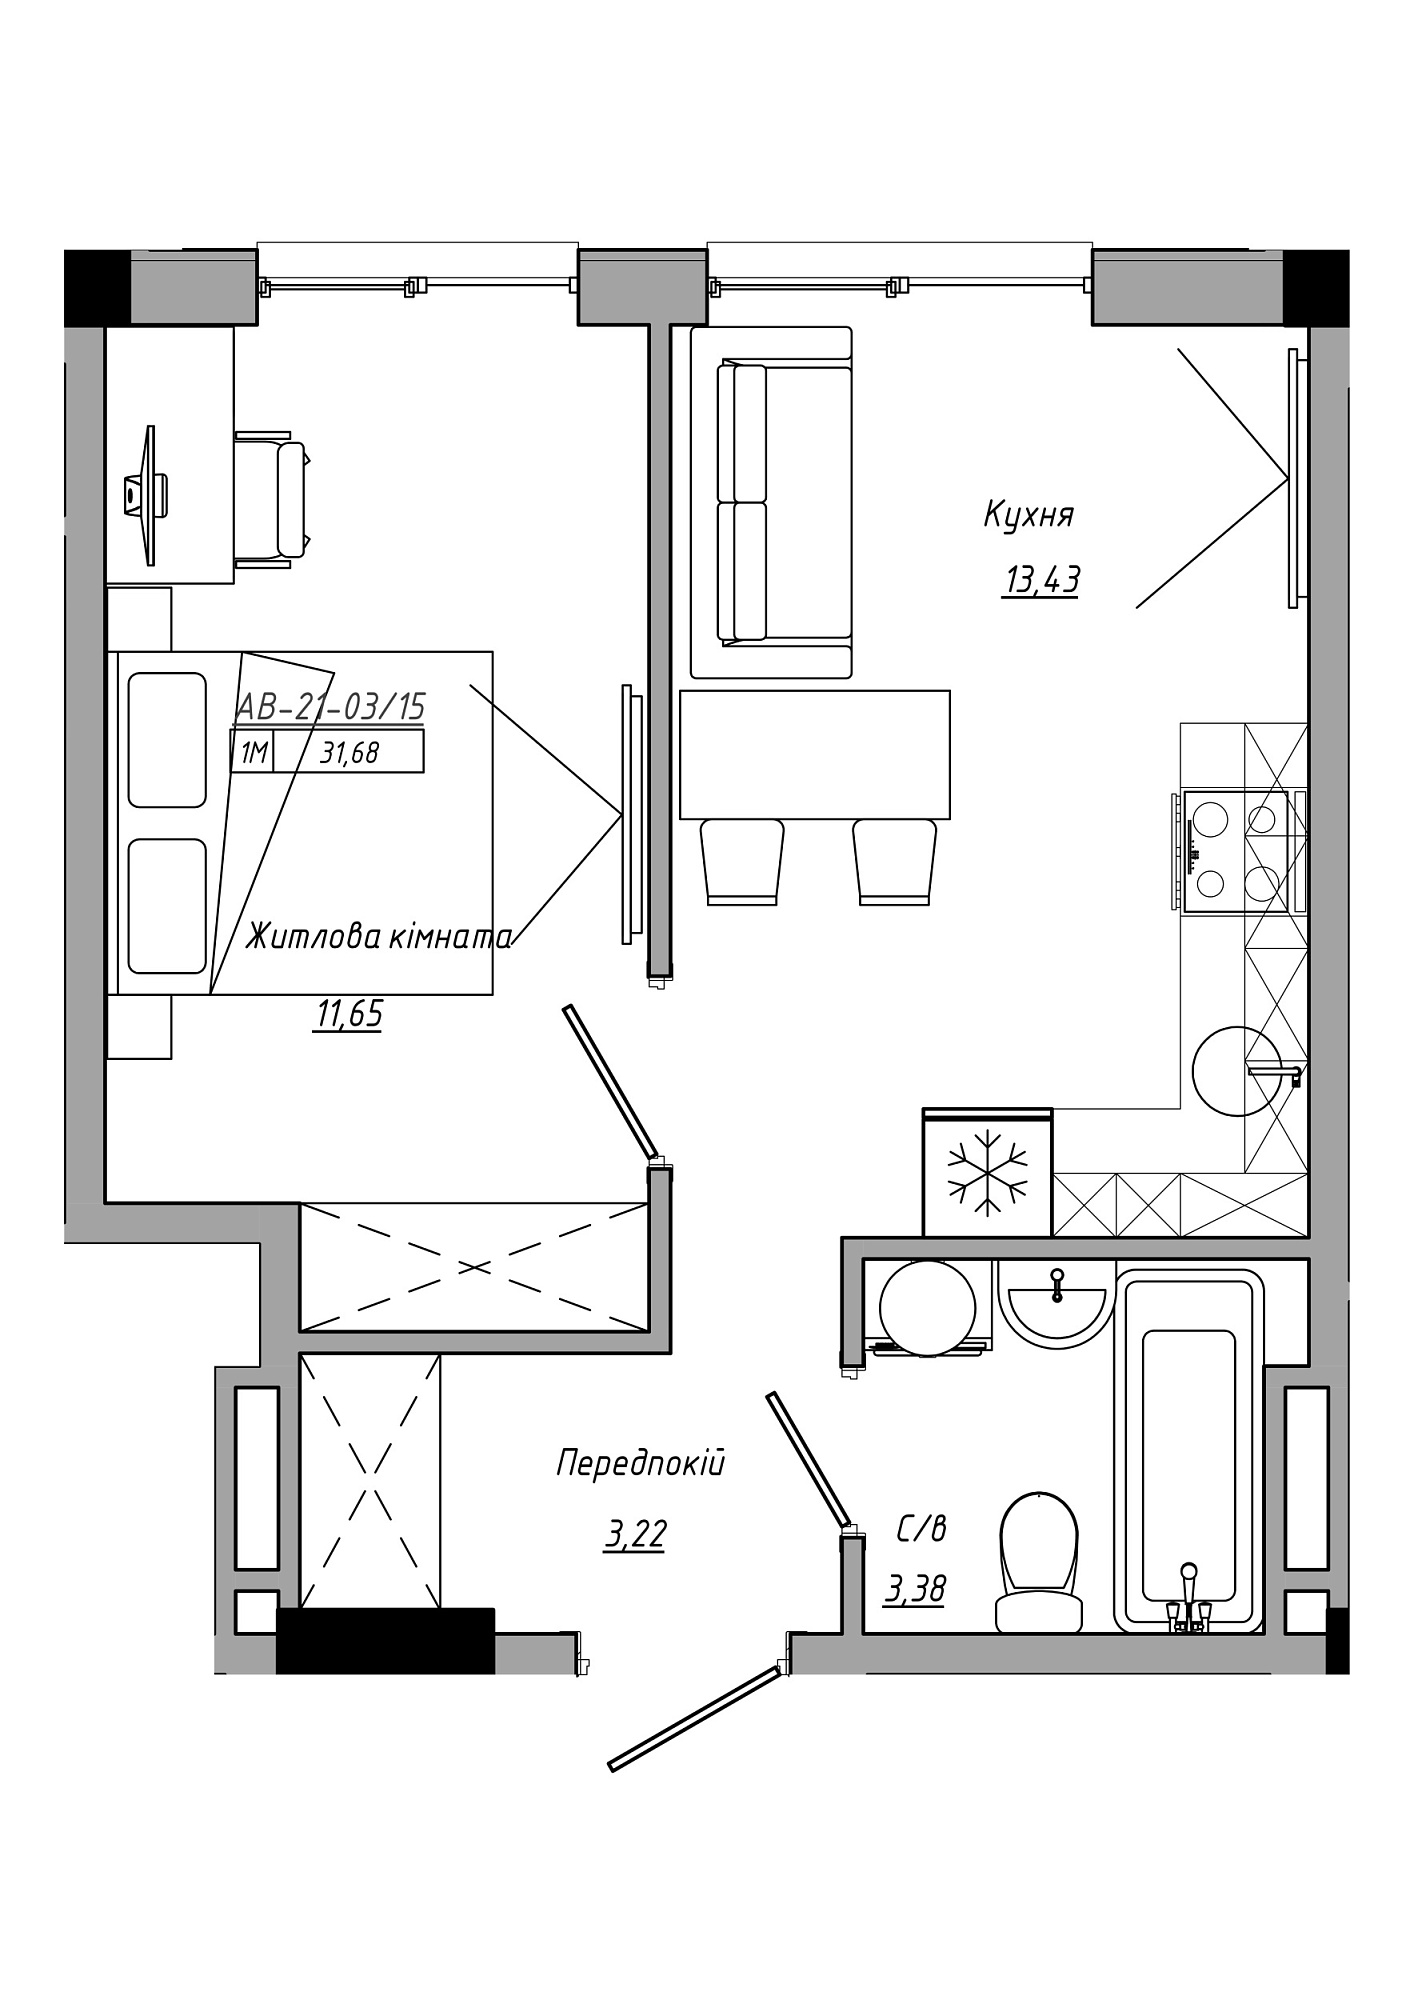 Планировка 1-к квартира площей 31.68м2, AB-21-03/00015.